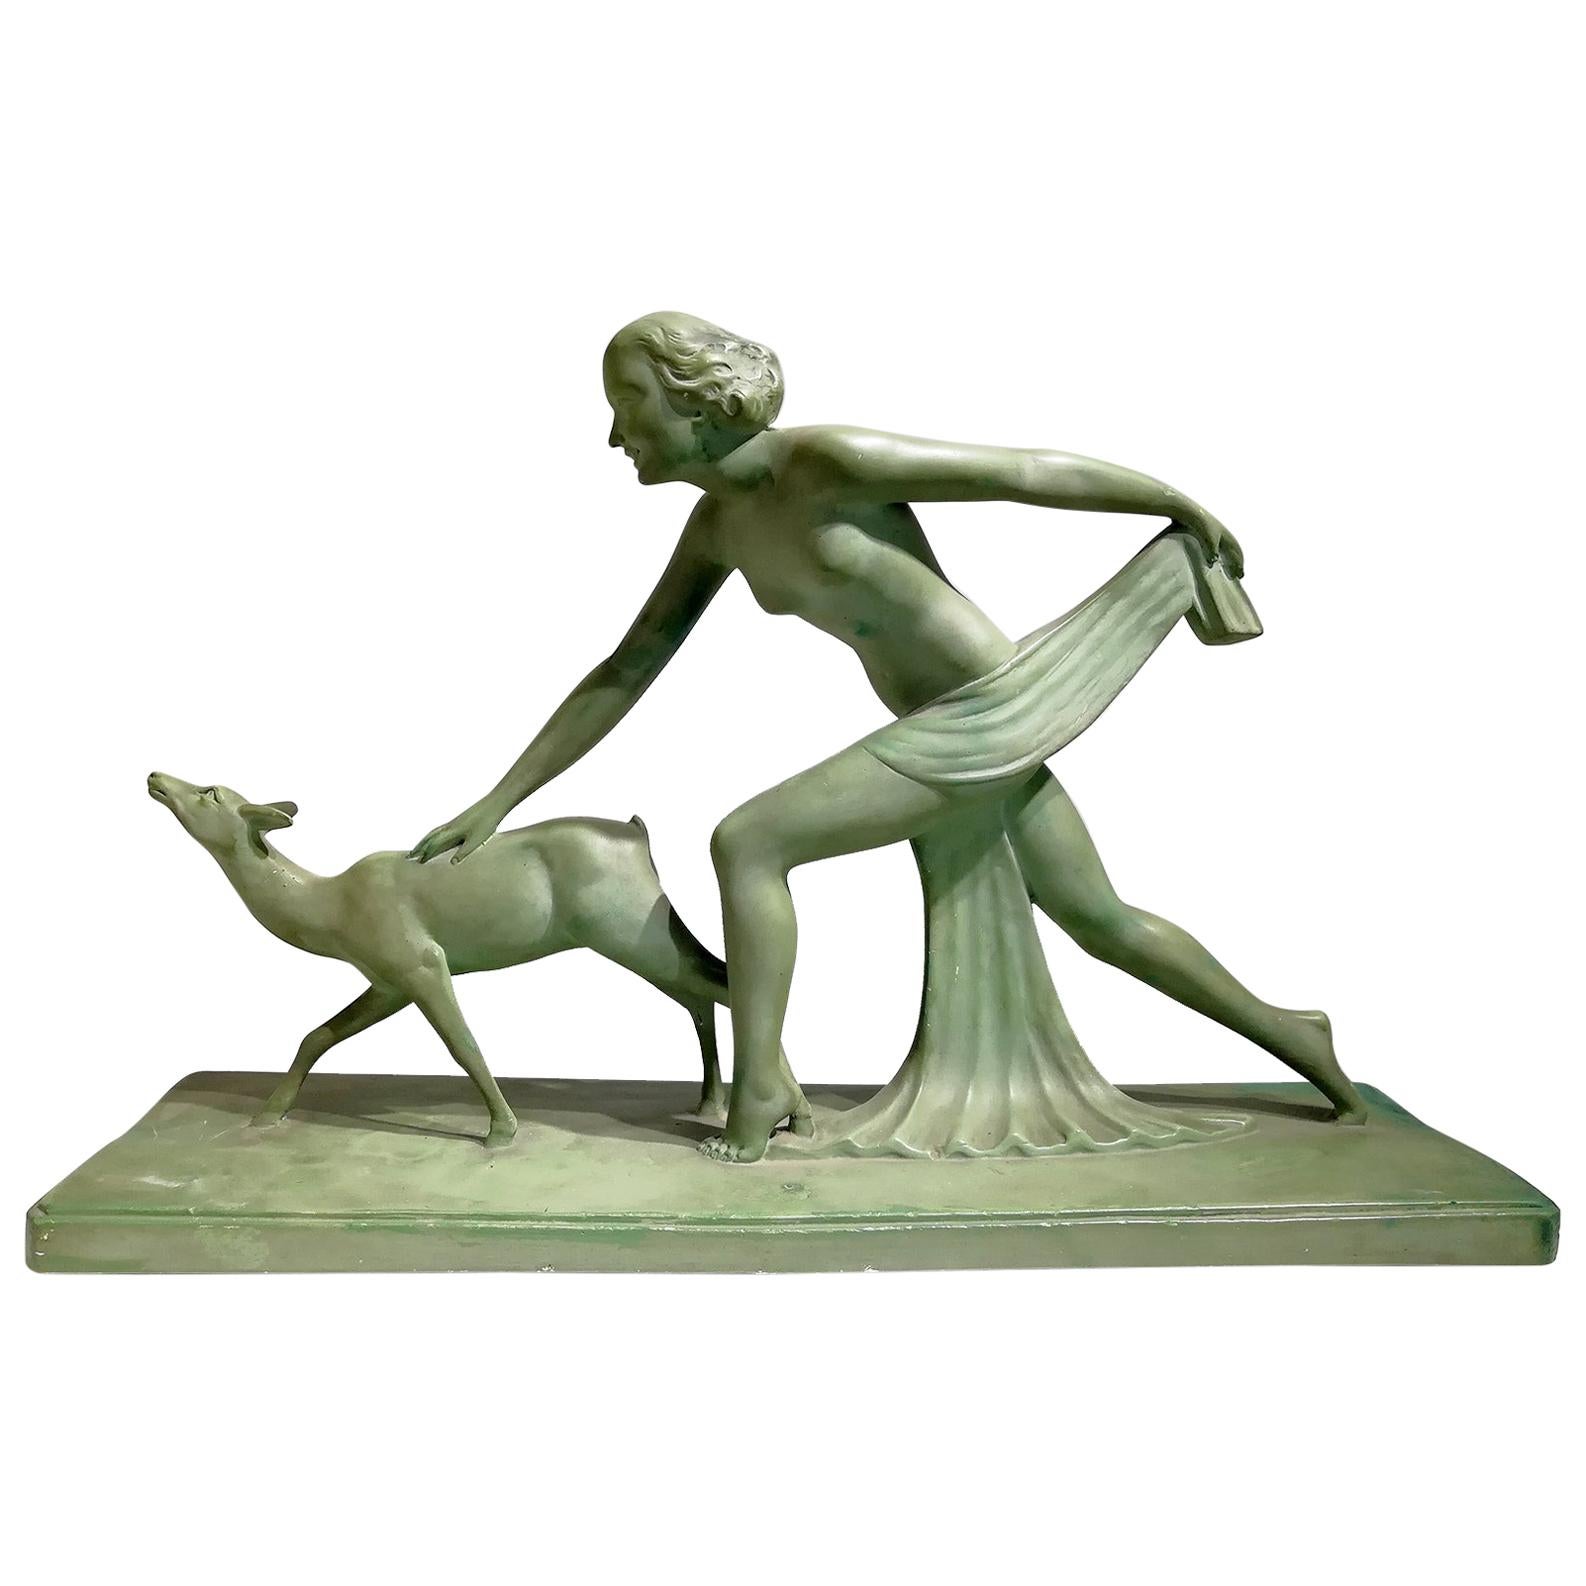 Magnifique sculpture en terre cuite verte signée S.Melanie Greene, circa 1920